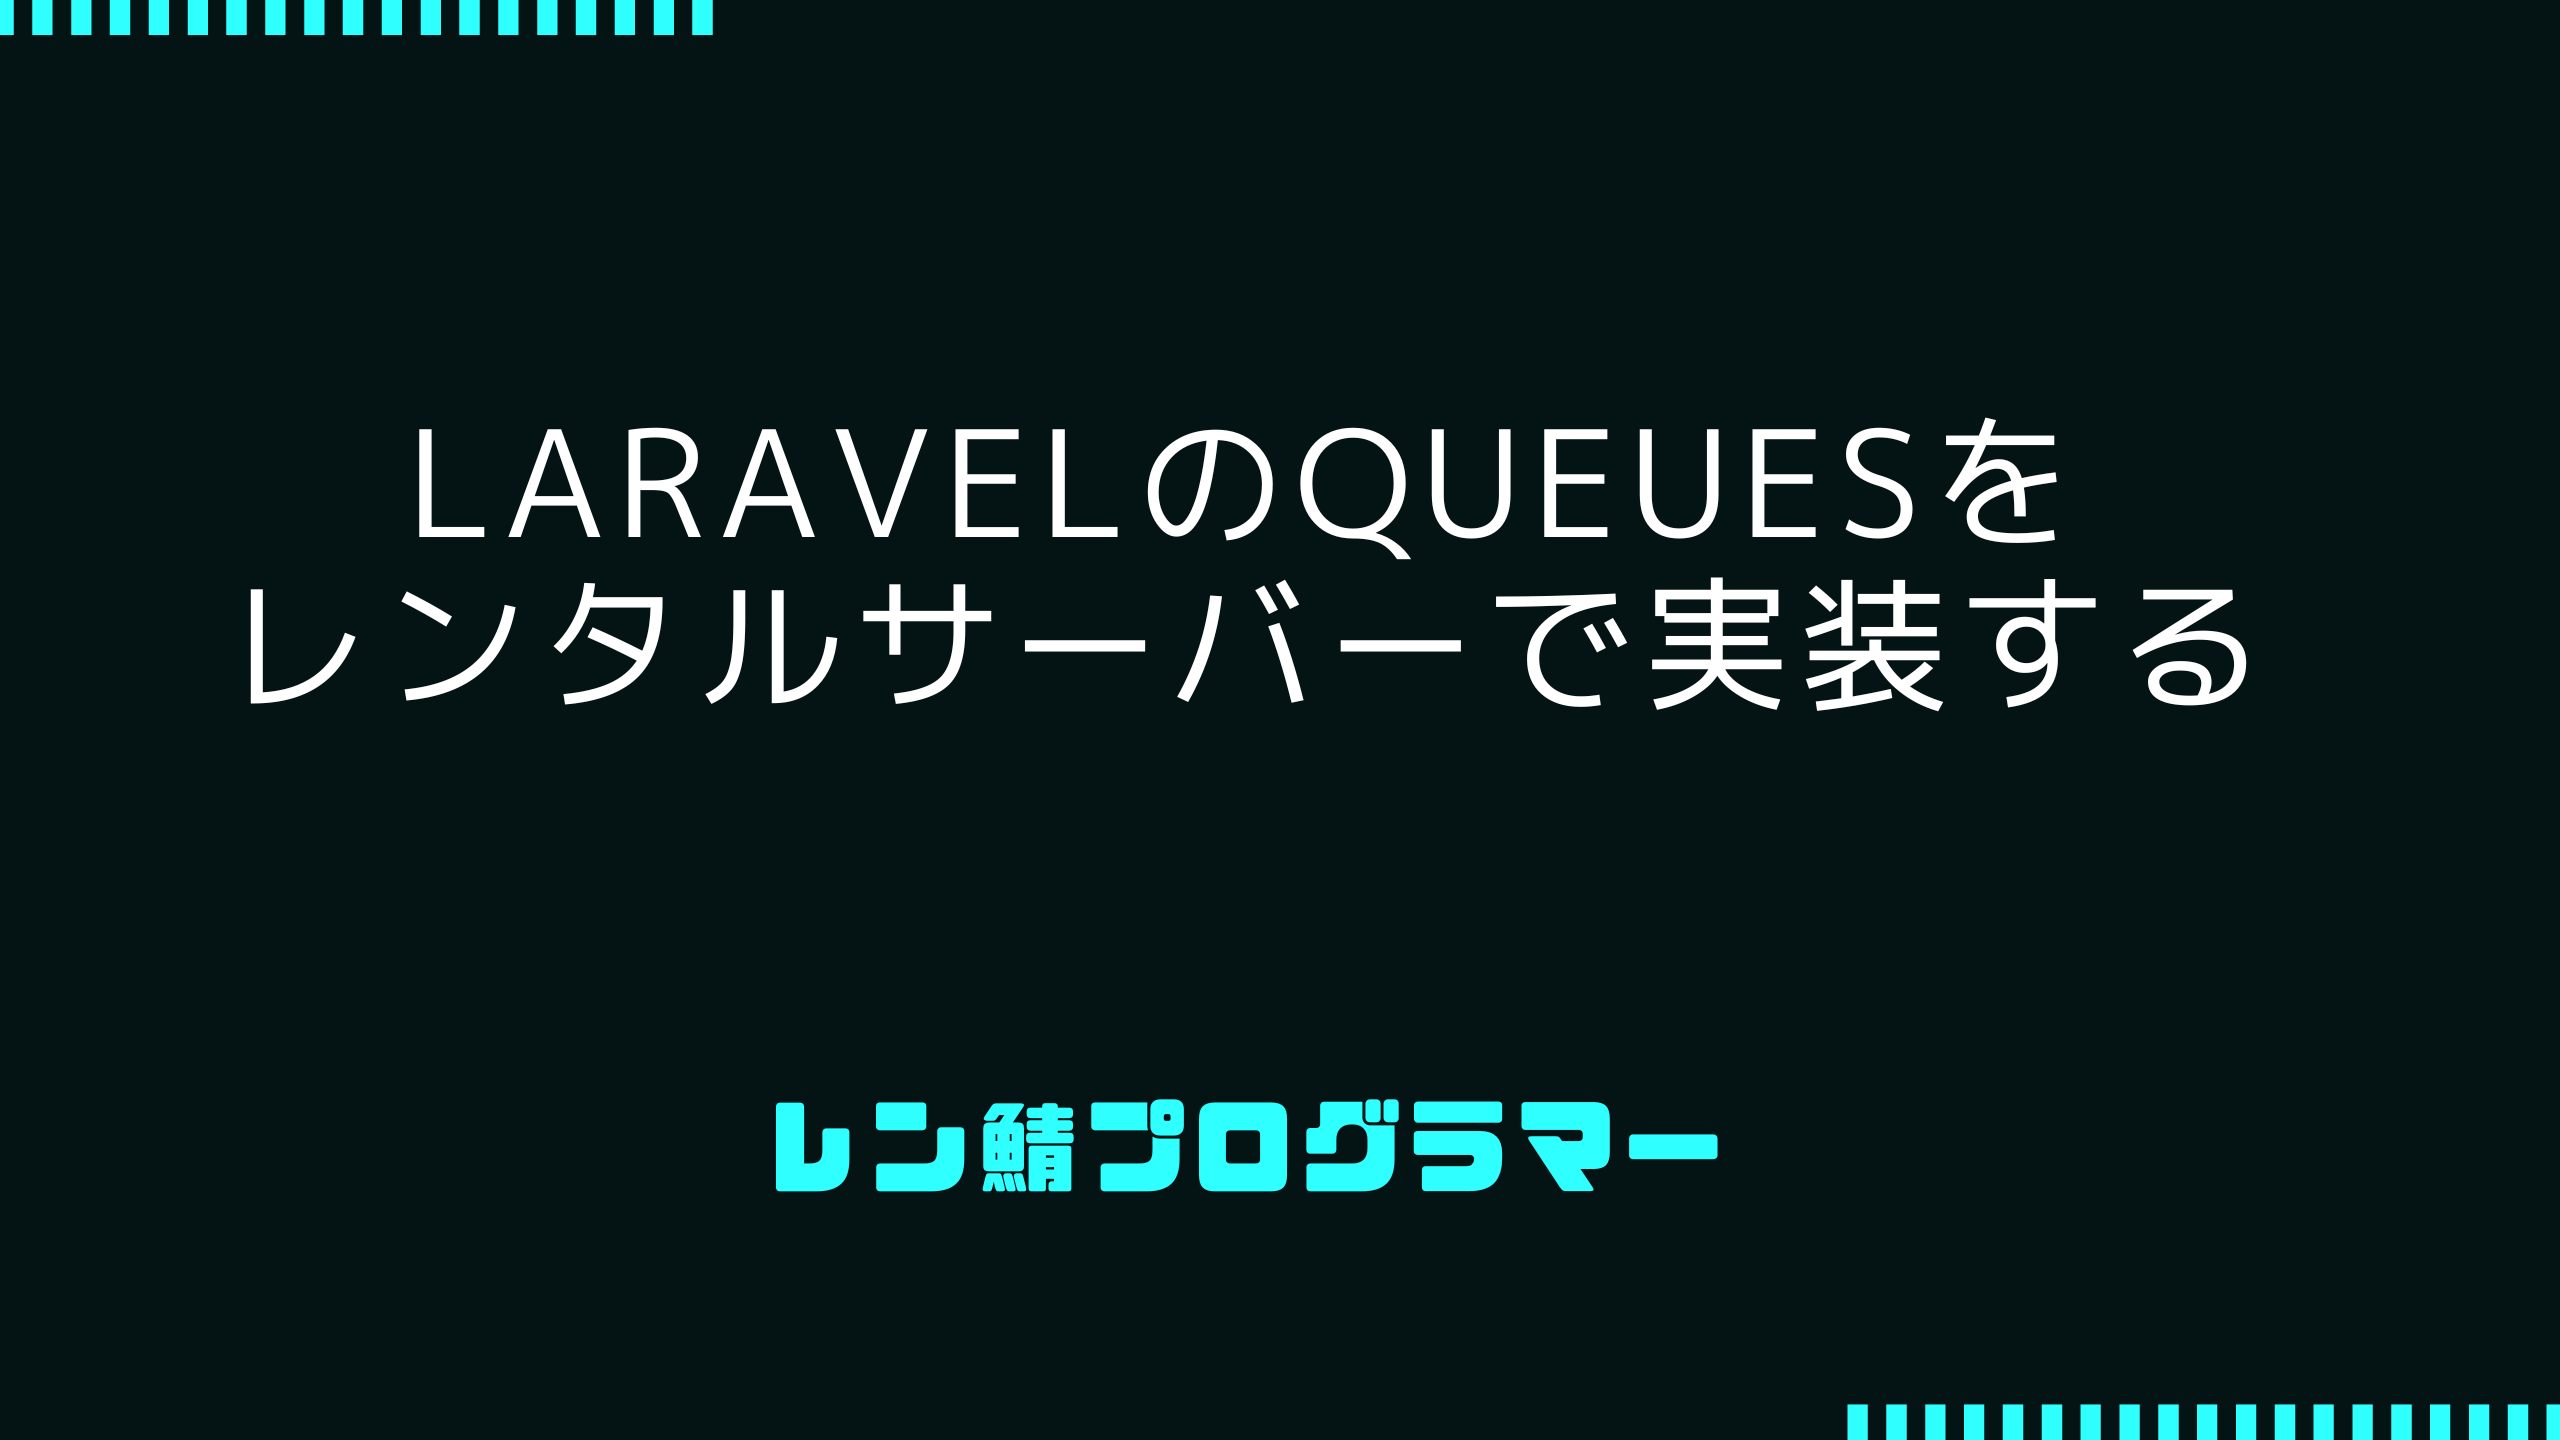 LaravelのQueuesをレンタルサーバーで実装する